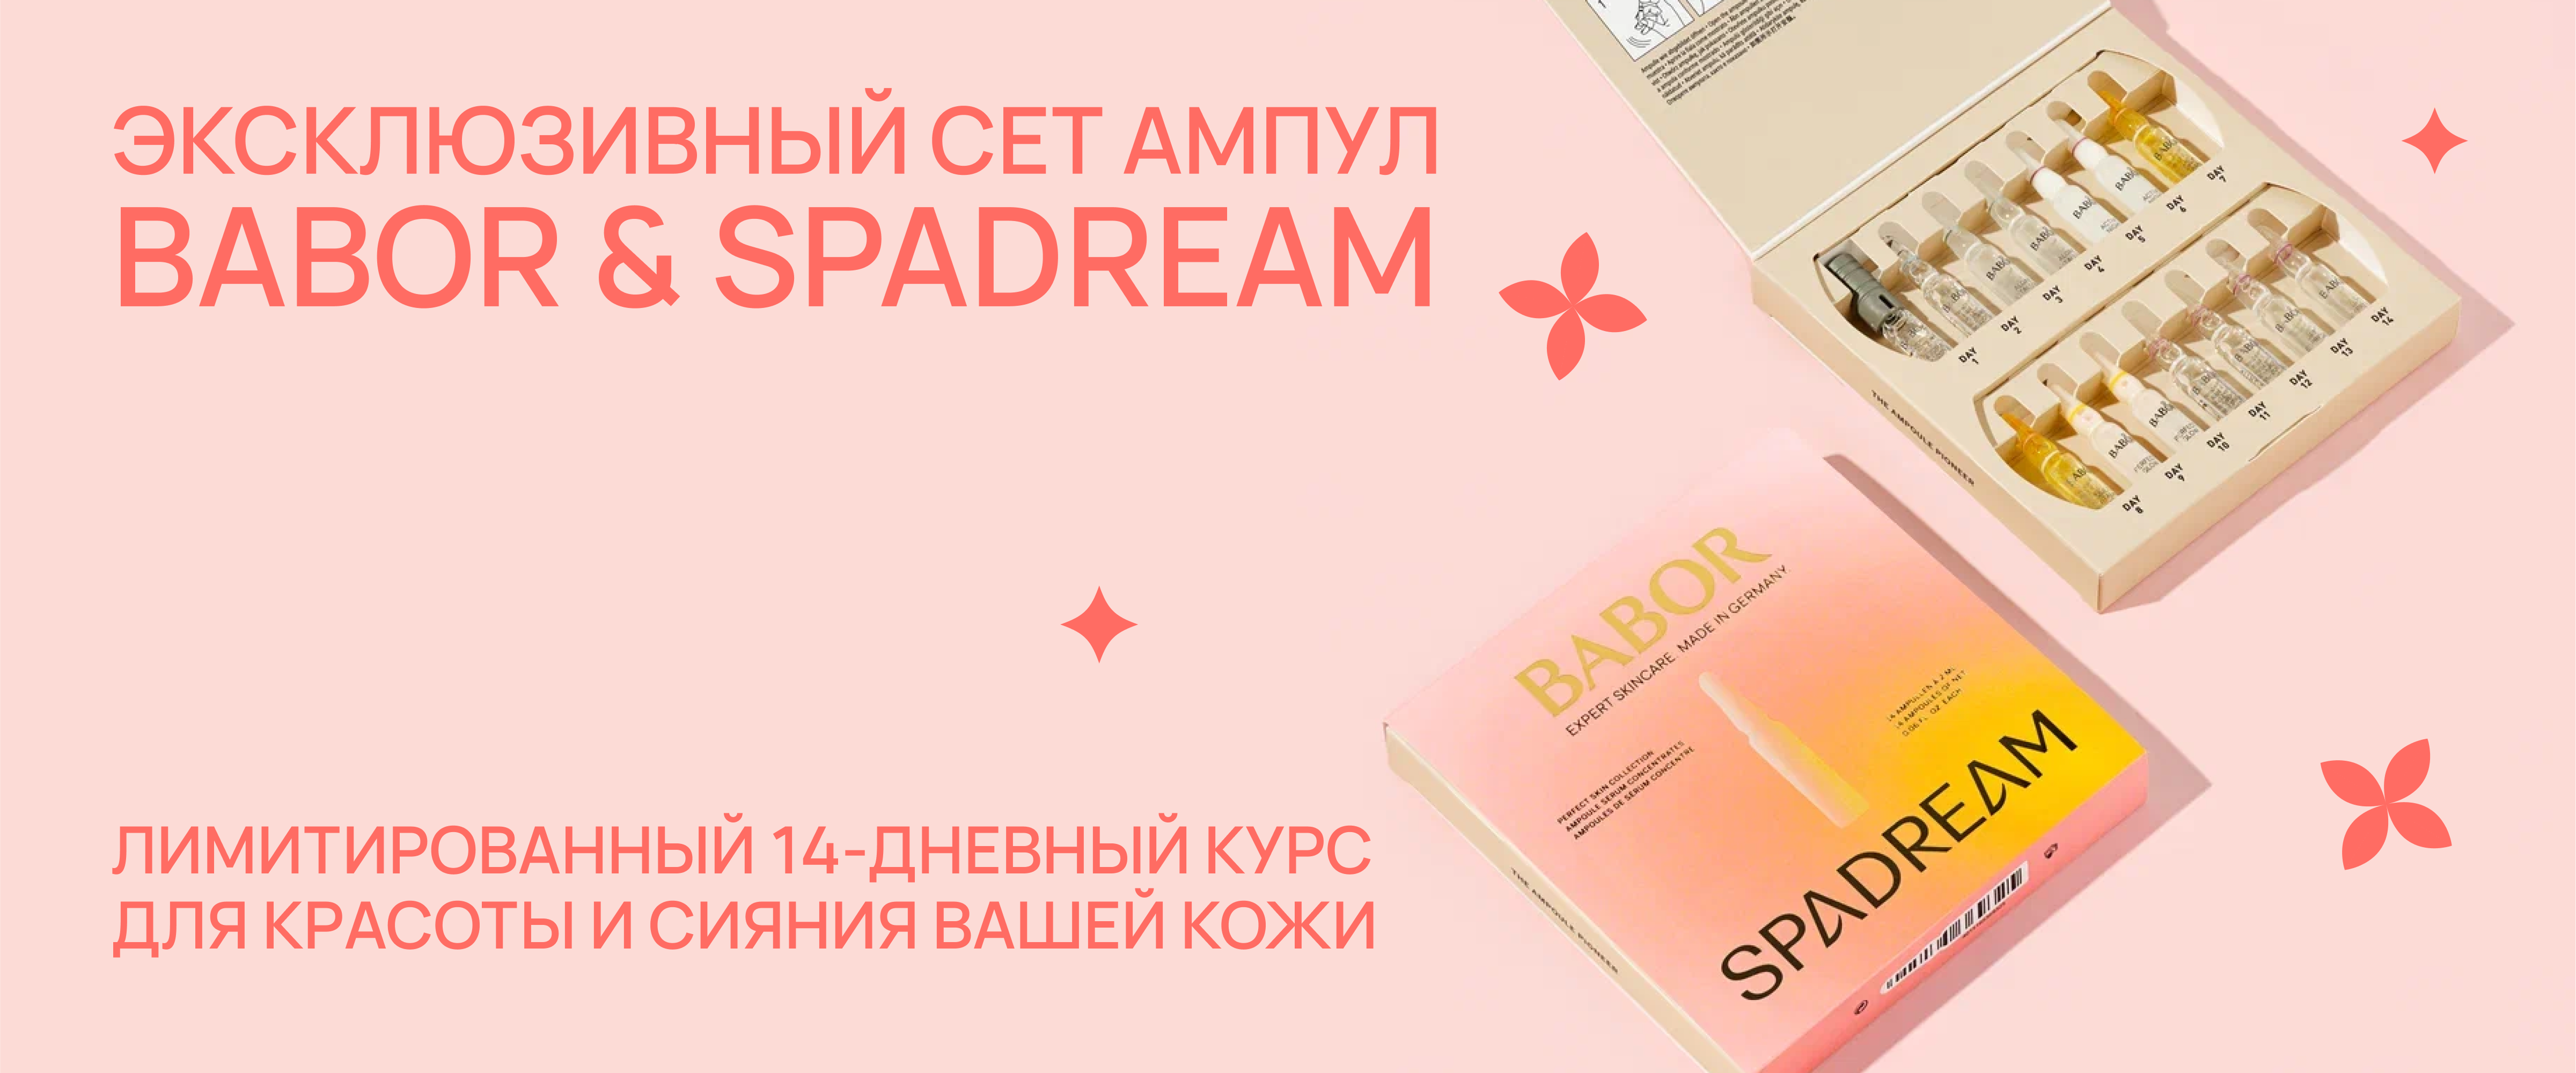 Ампулы Spadream&BABOR - интернет-магазин профессиональной косметики Spadream, изображение 52707